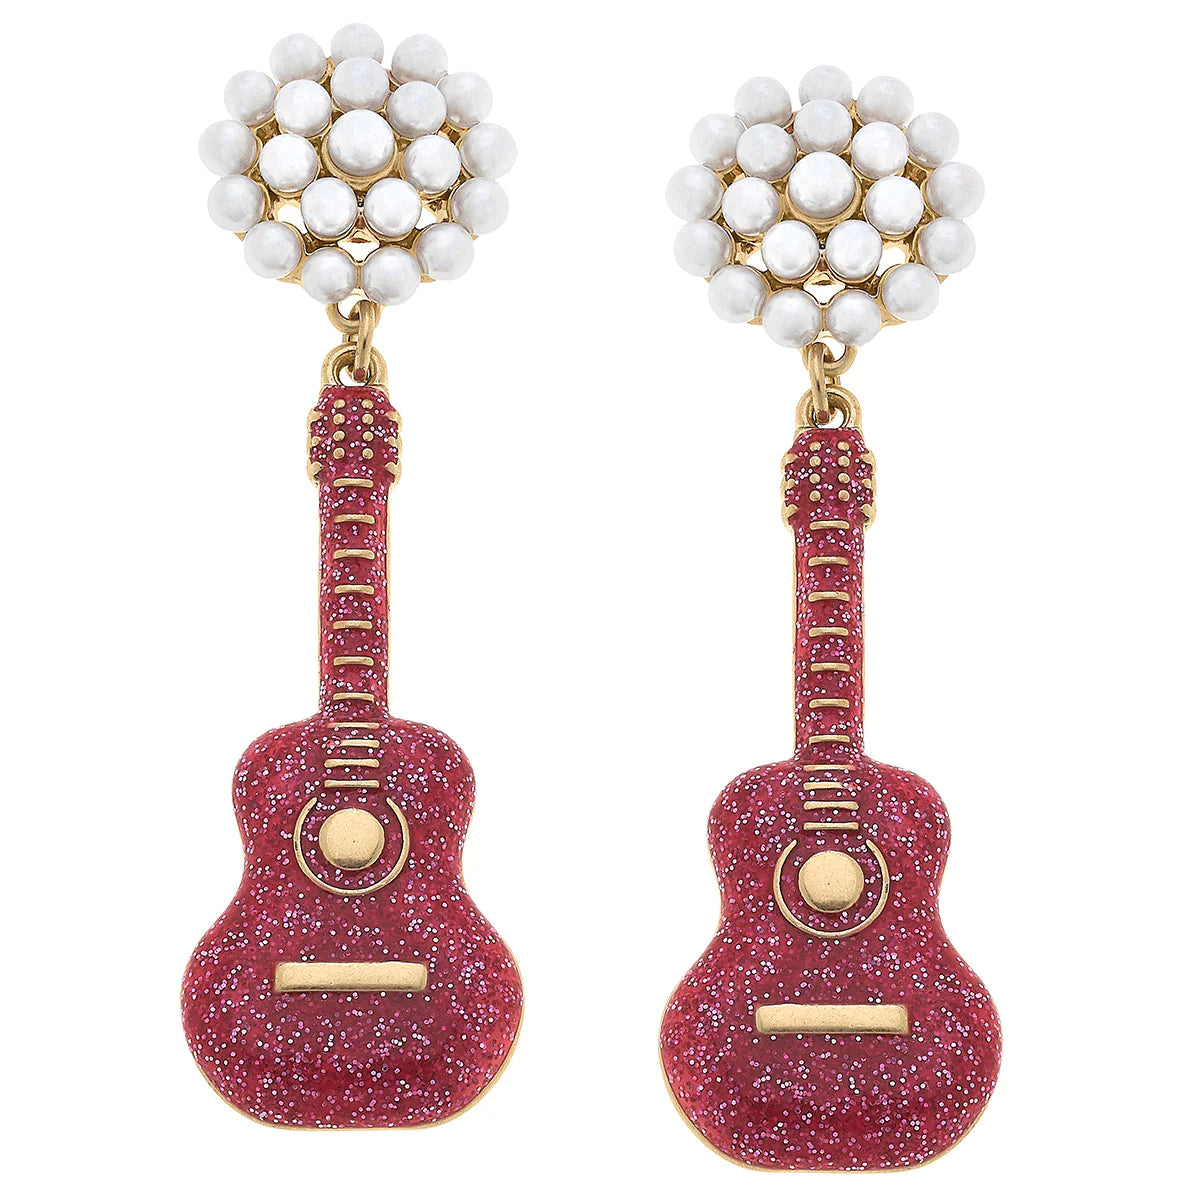 Nashville Guitar Pearl Cluster Enamel Earring